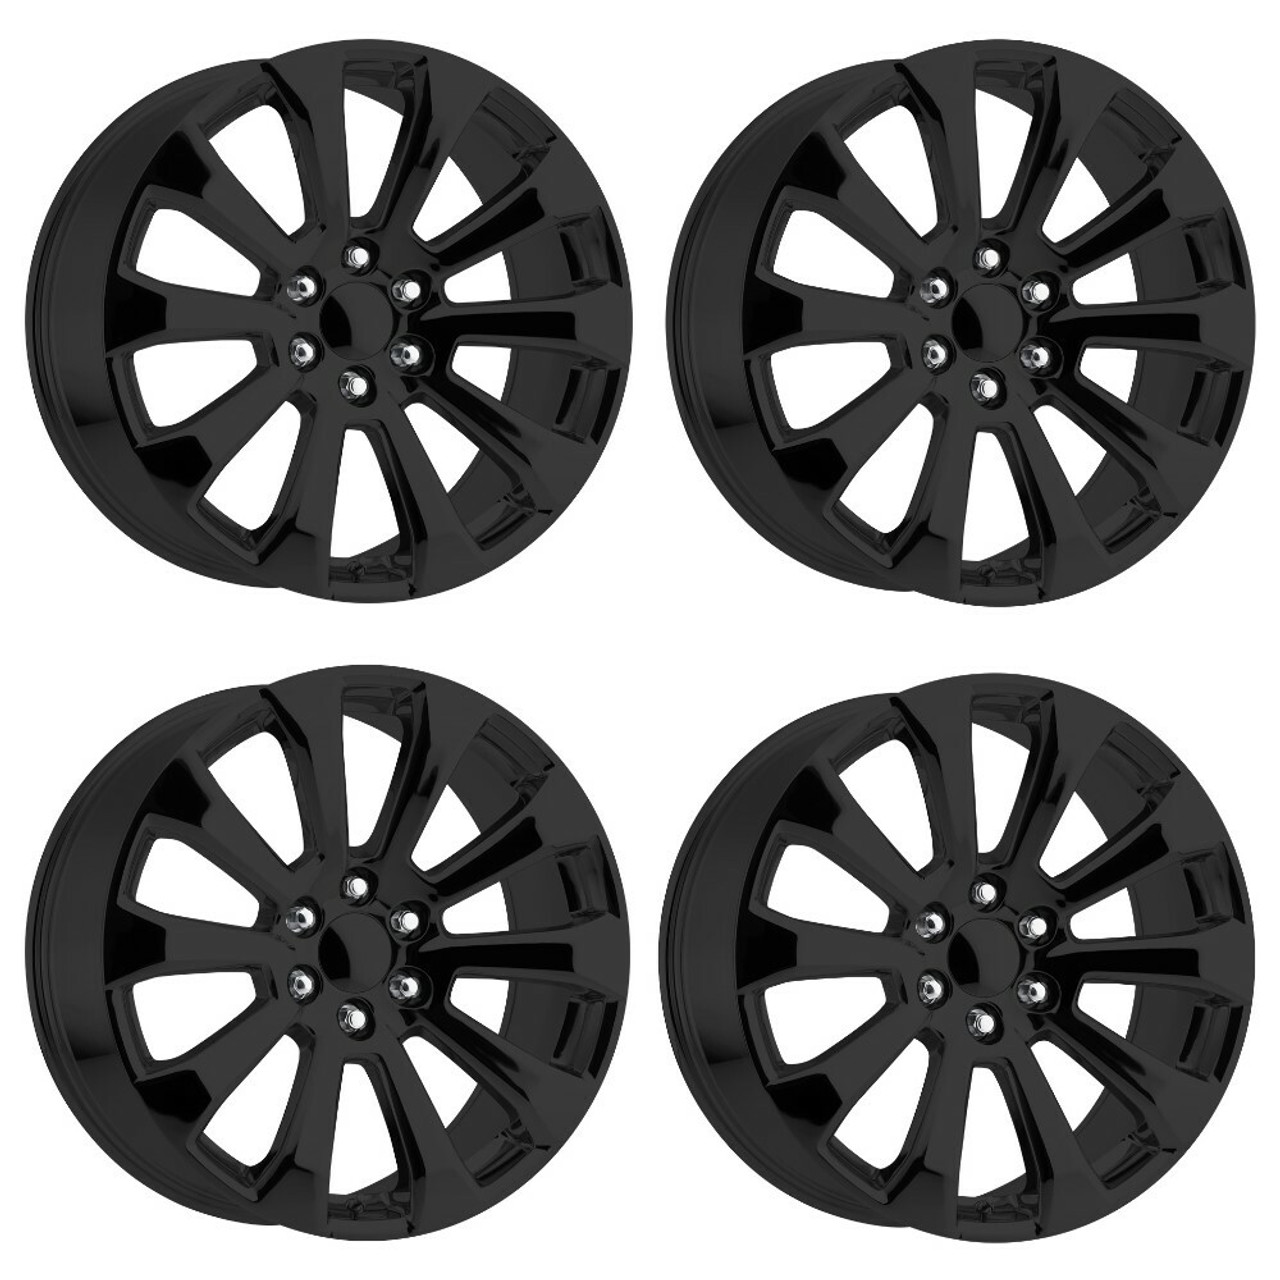 Set 4 Performance Replicas PR204 22x9 6x5.5 Gloss Black Wheels 22" 28mm Rims